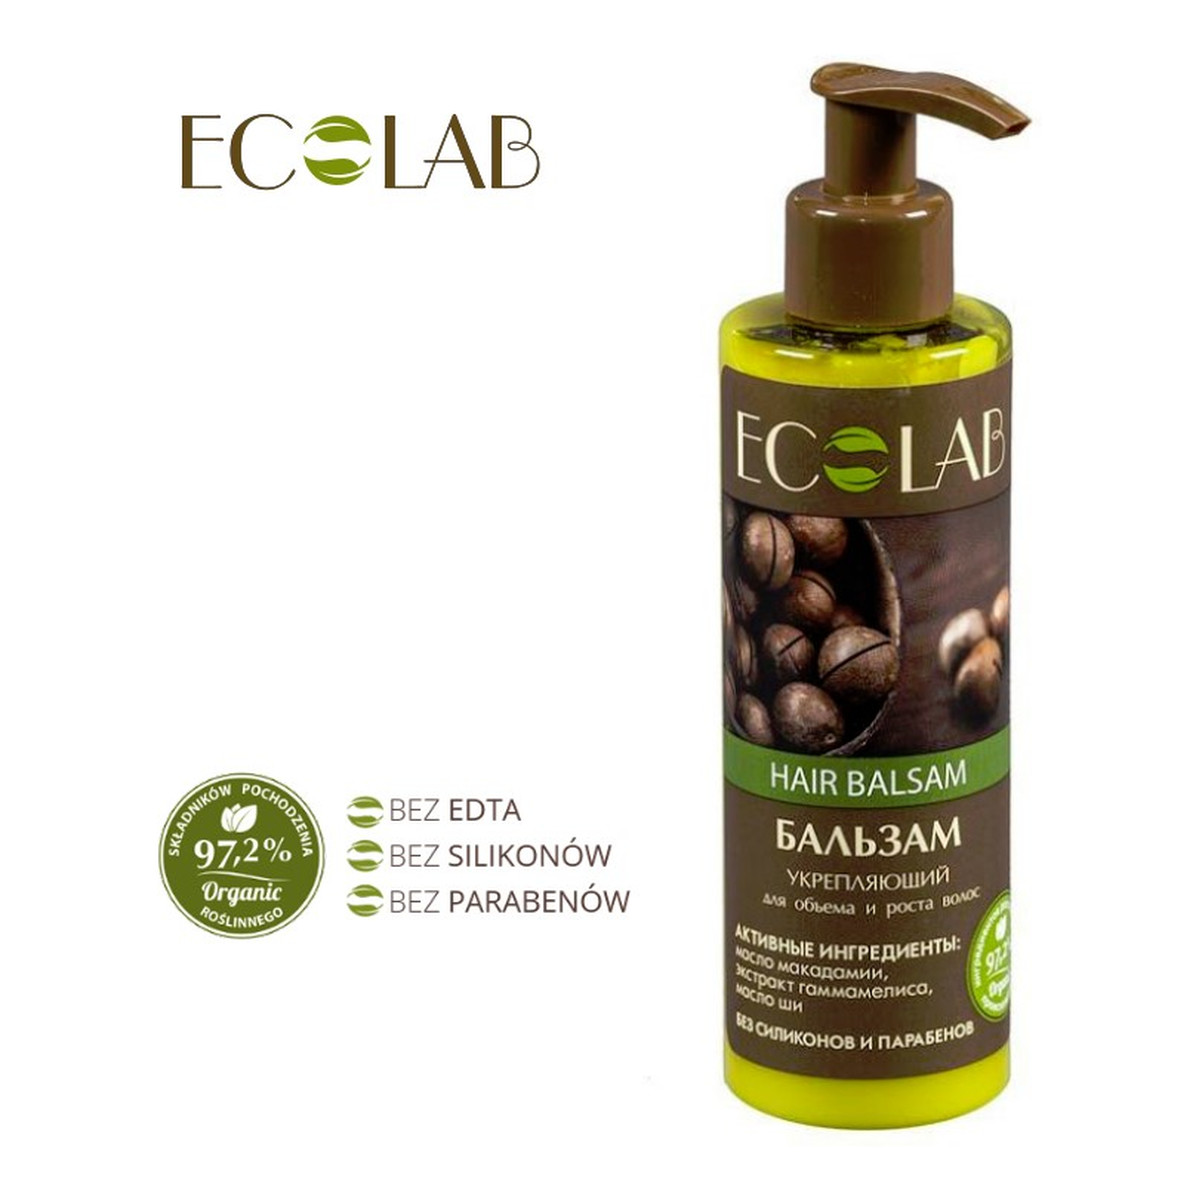 Ecolab Ec Laboratorie Balsam Wzmacniający do Włosów Objętość i Wzrost 200ml